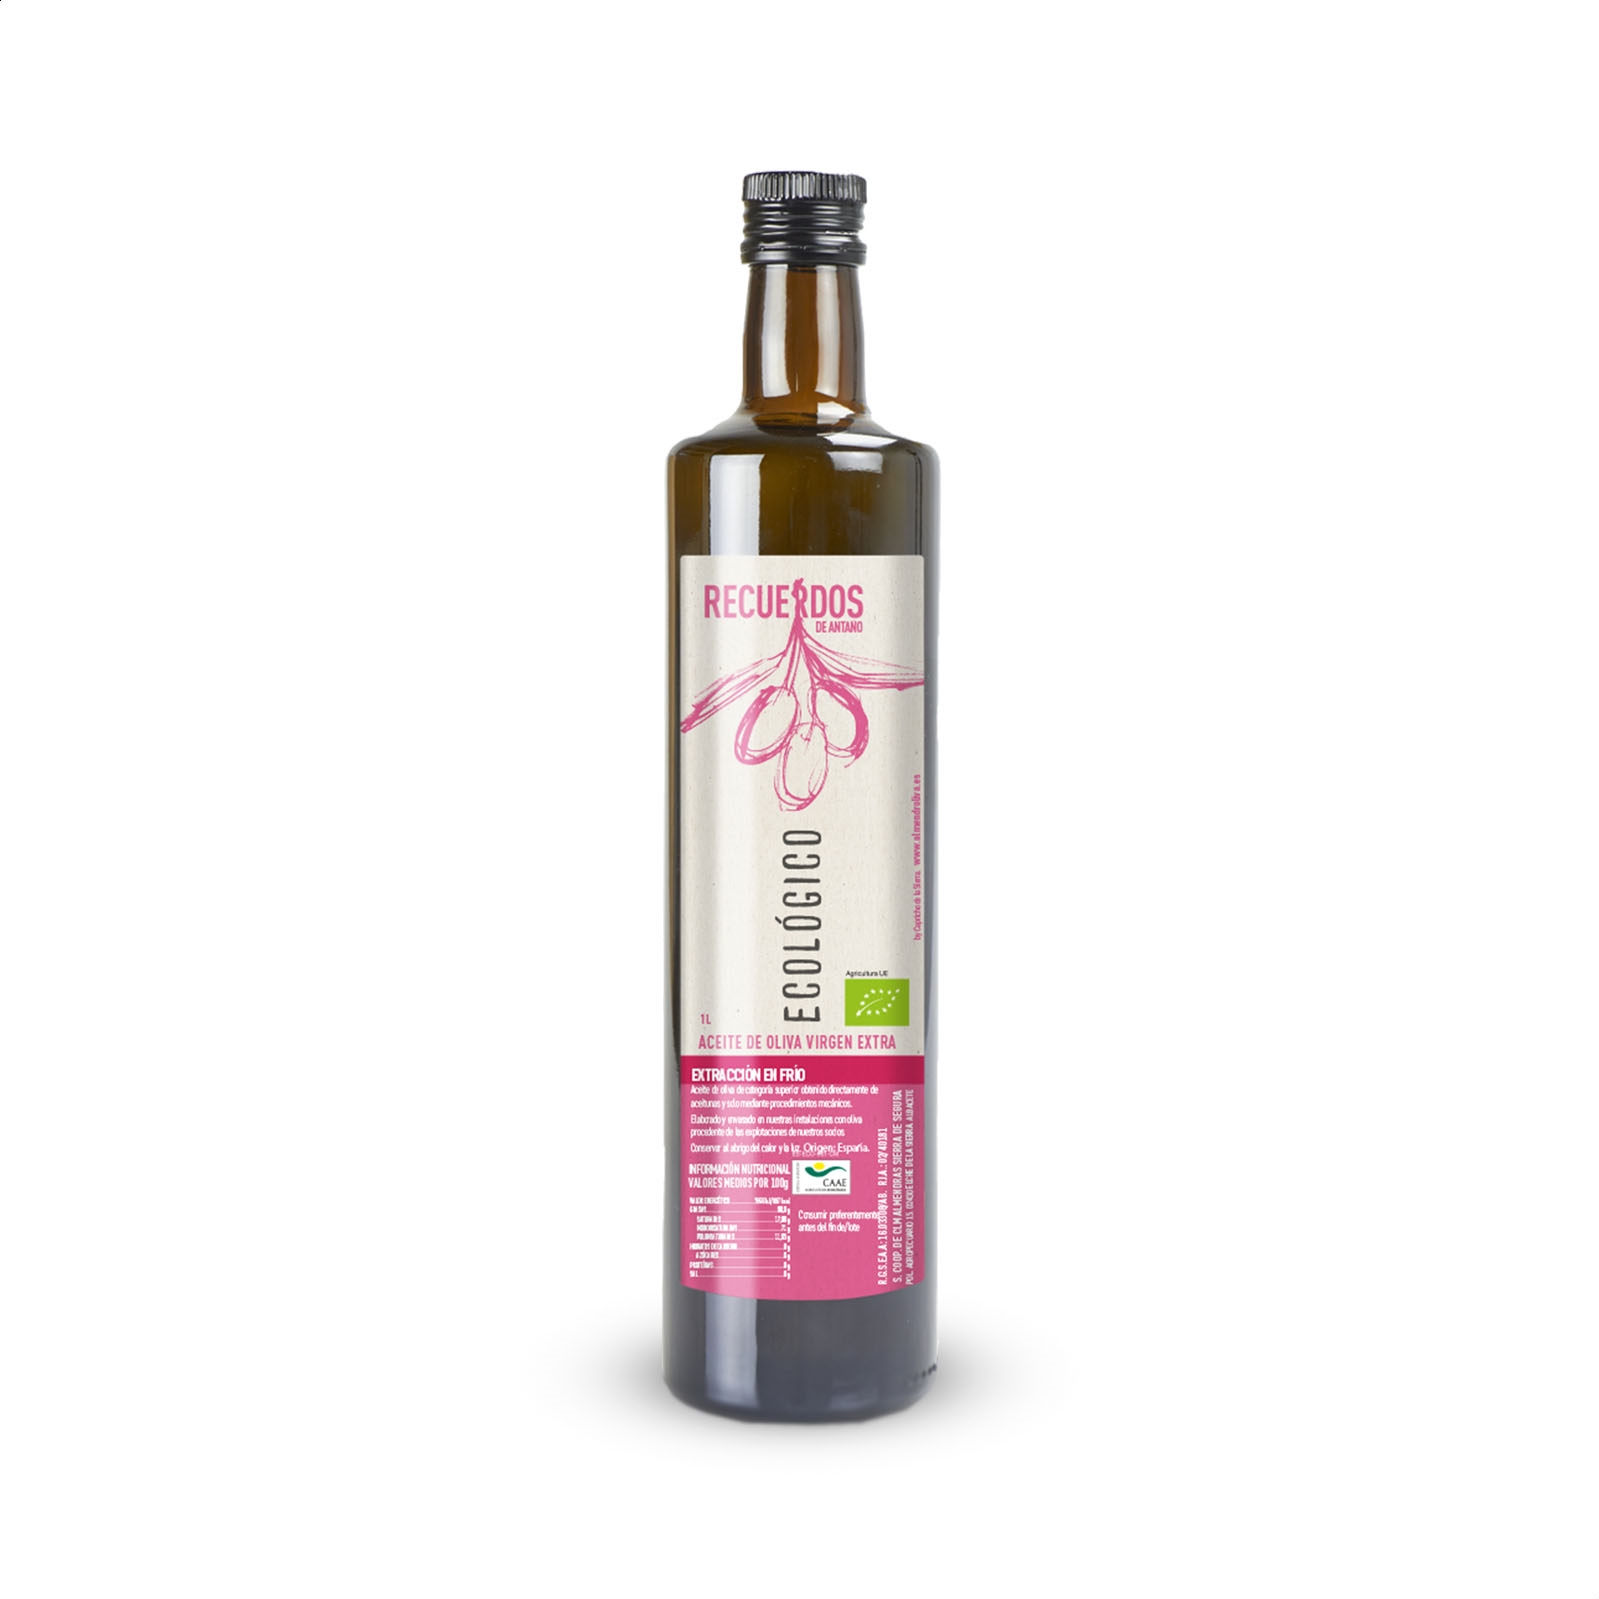 Aceite de oliva virgen extra. Estuche de 3 botellas de 750 ml. –  Cooperativa Reflejos de Cozar